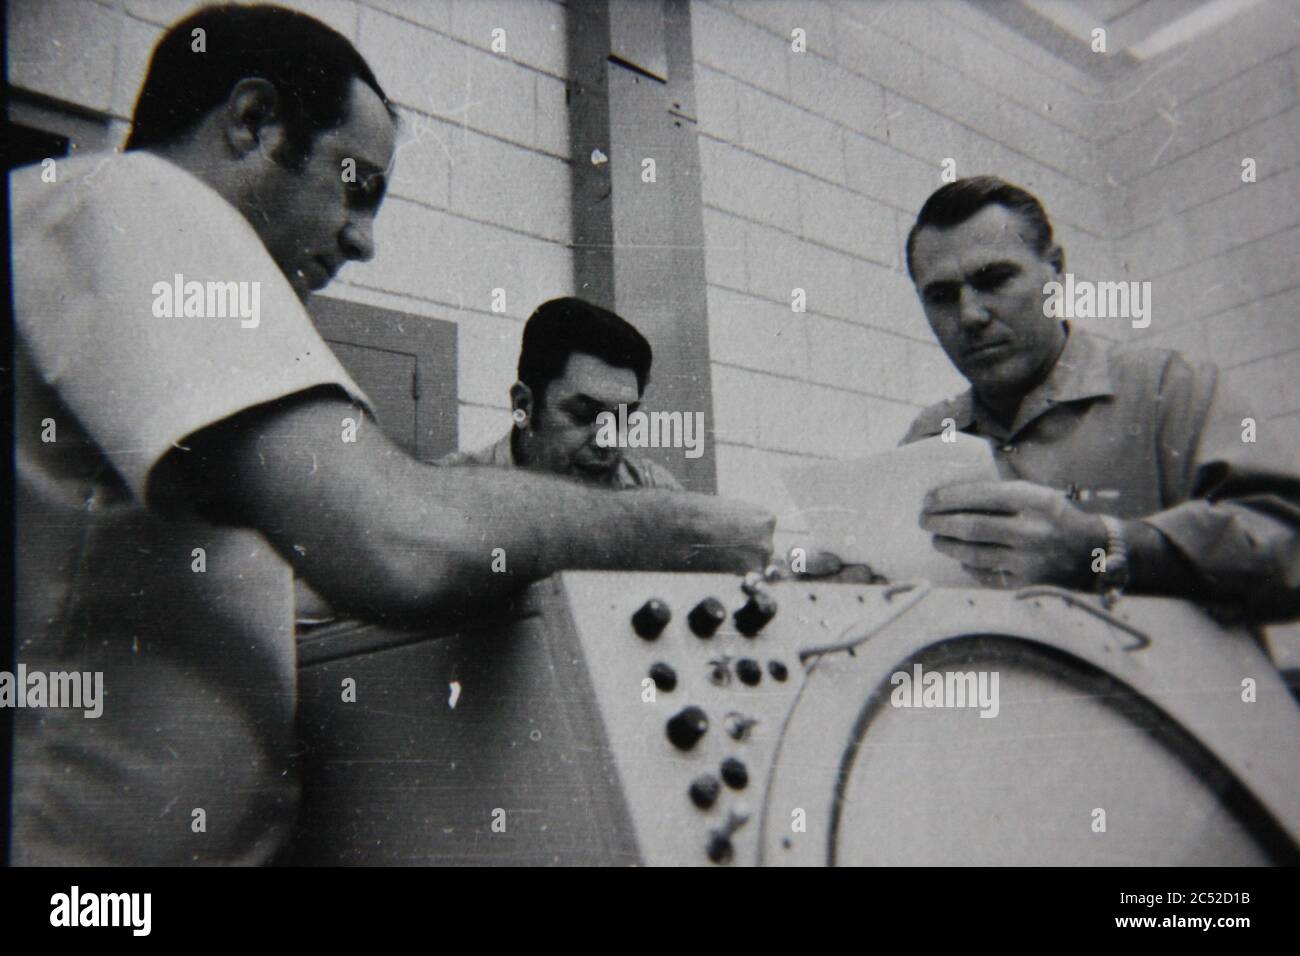 Fine anni 70 vintage nero e bianco stile di vita fotografia di tre uomini che parlano di un radar super computer assembly. Foto Stock